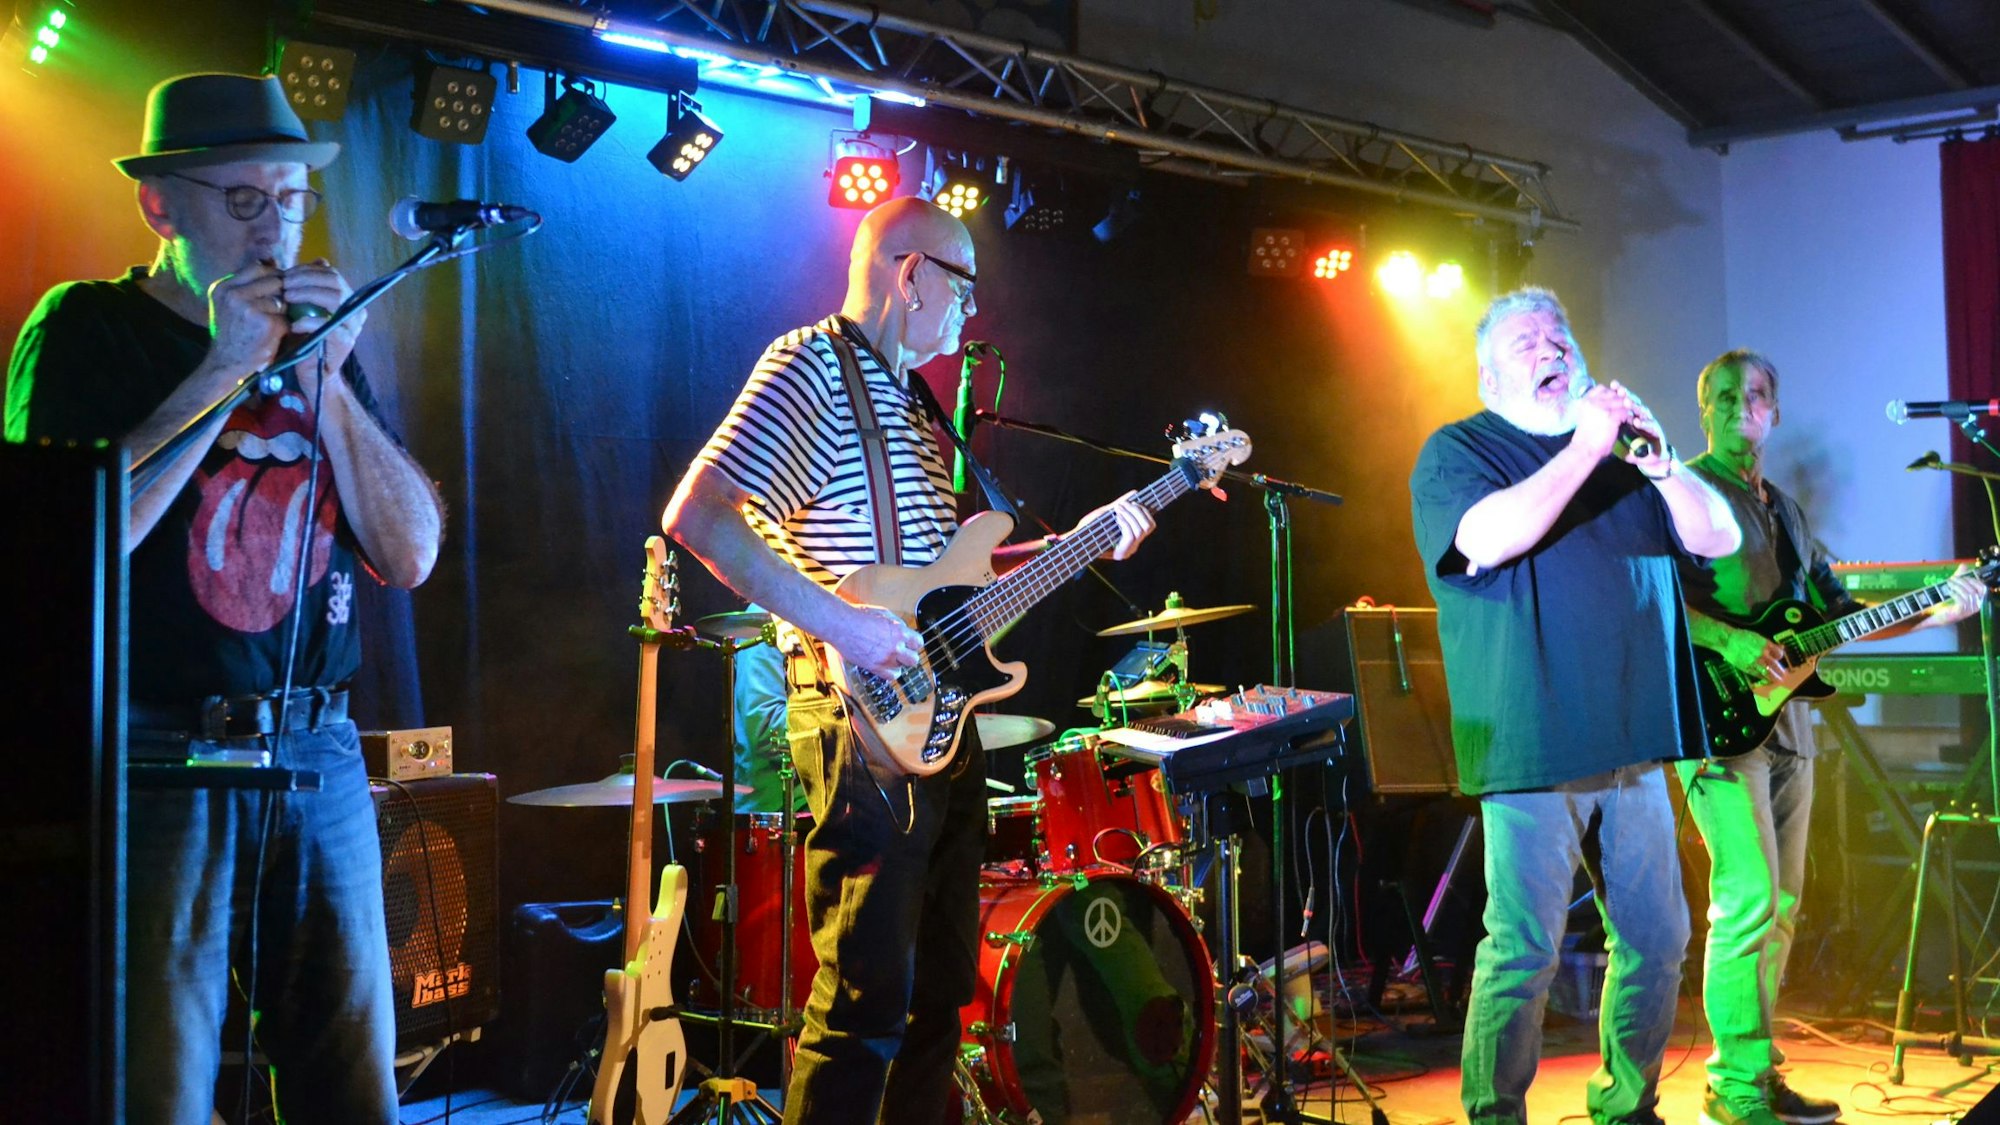 Musiker der Band "Rostfrei" stehen auf der Bühne, spielen E-Gitarre und singen.